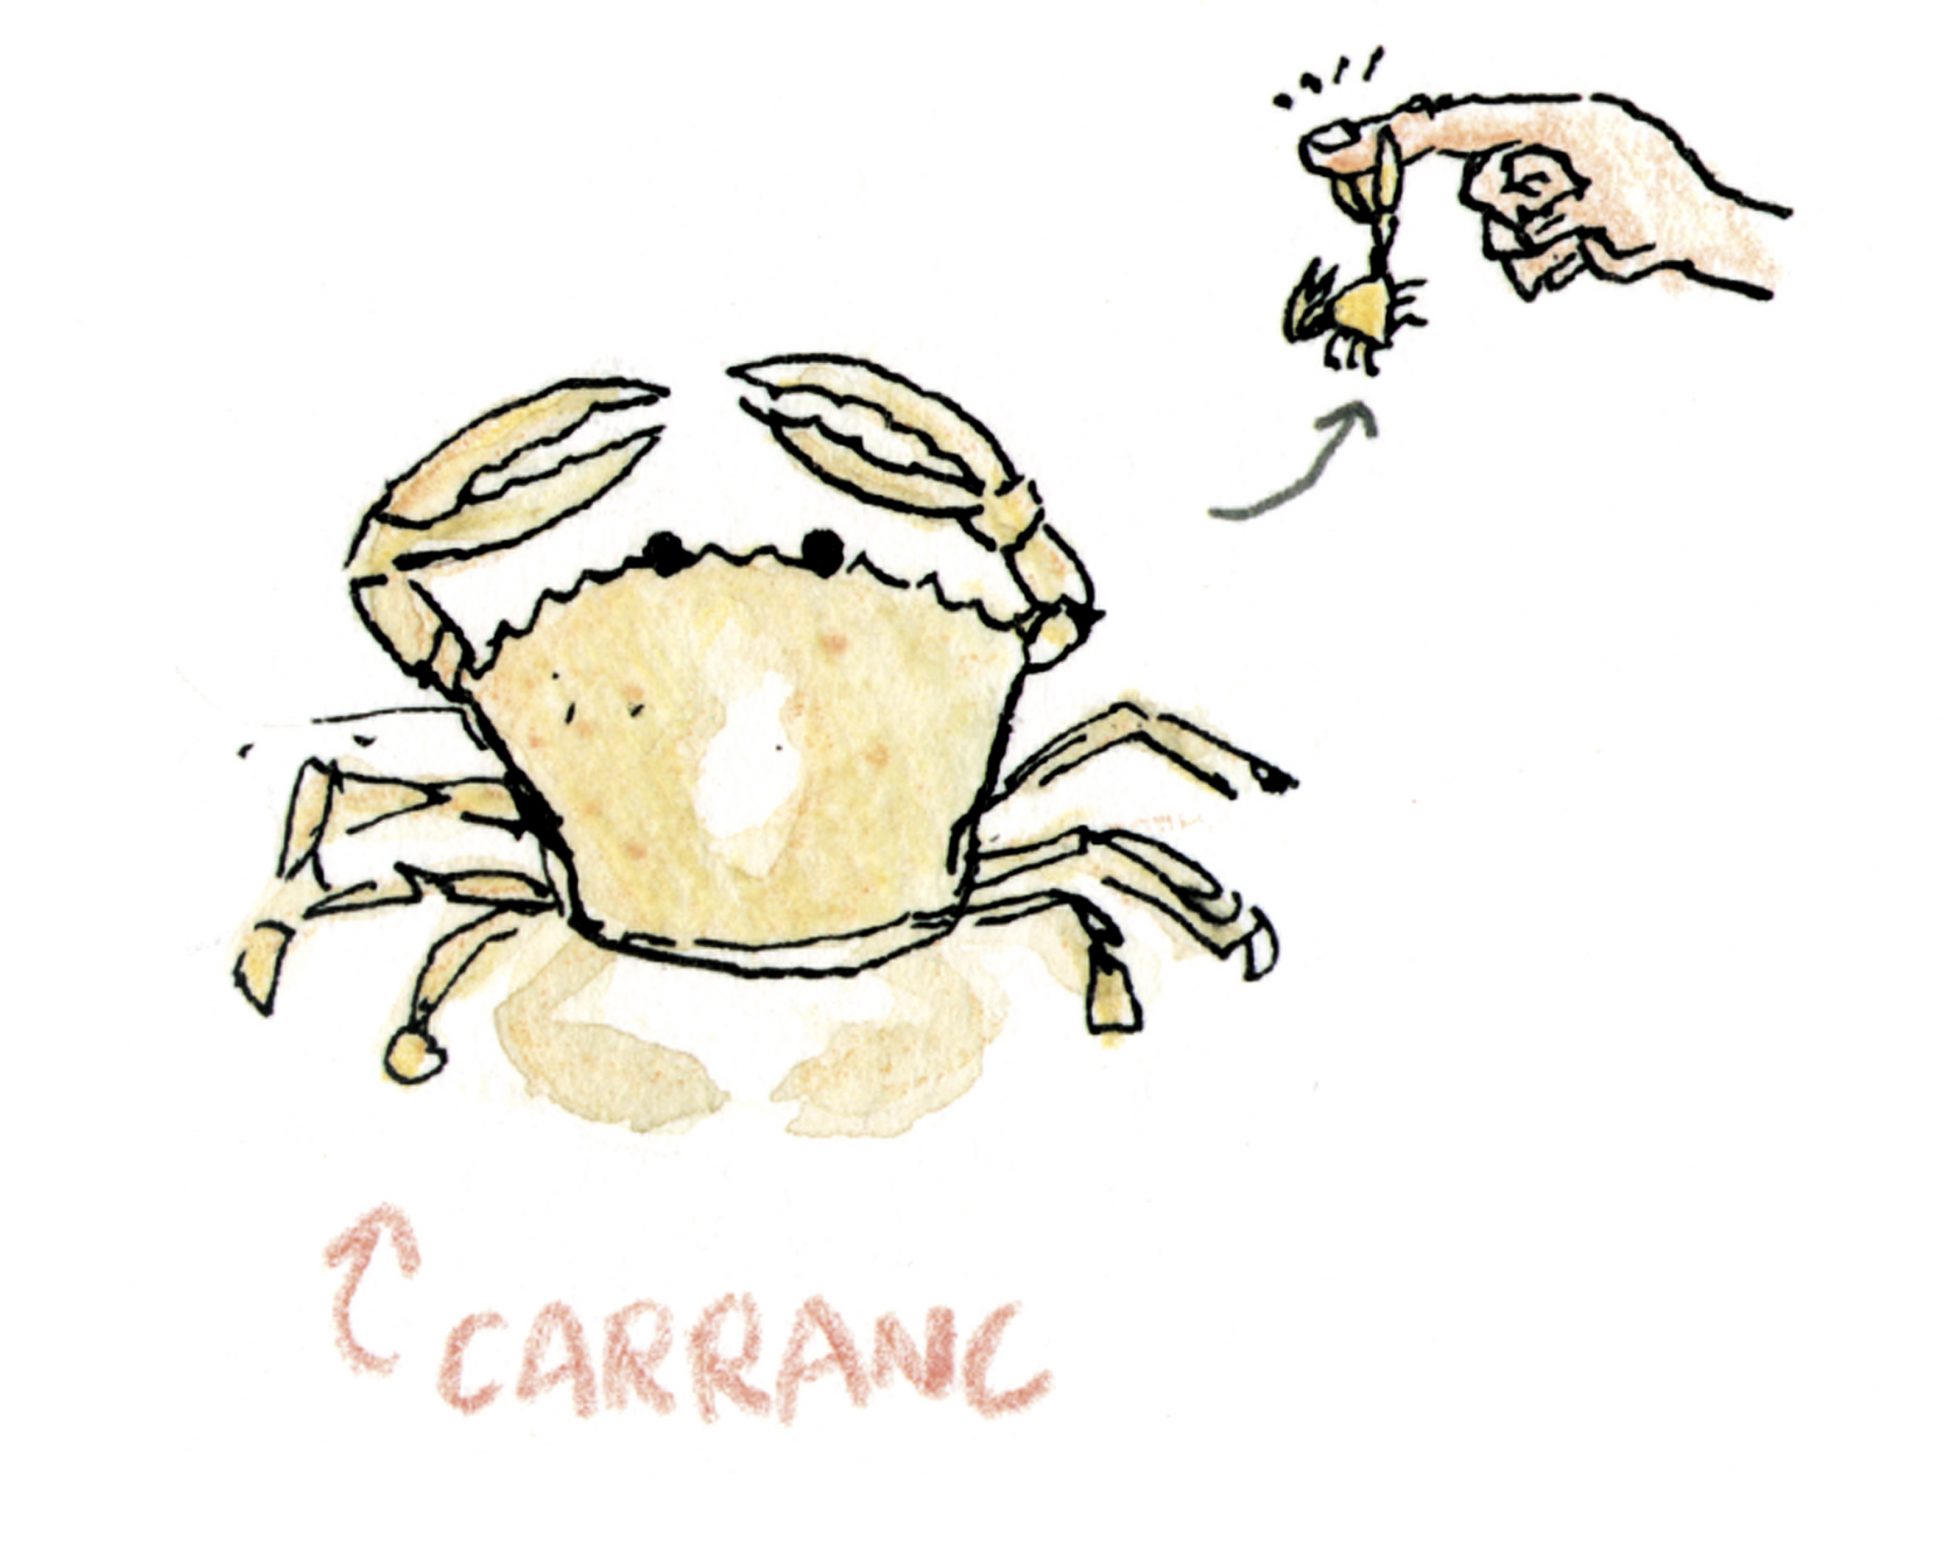 Lámina con una ilustración en tinta y acuarela sobre papel de un cangrejo de playa (Carranc en Valencia)